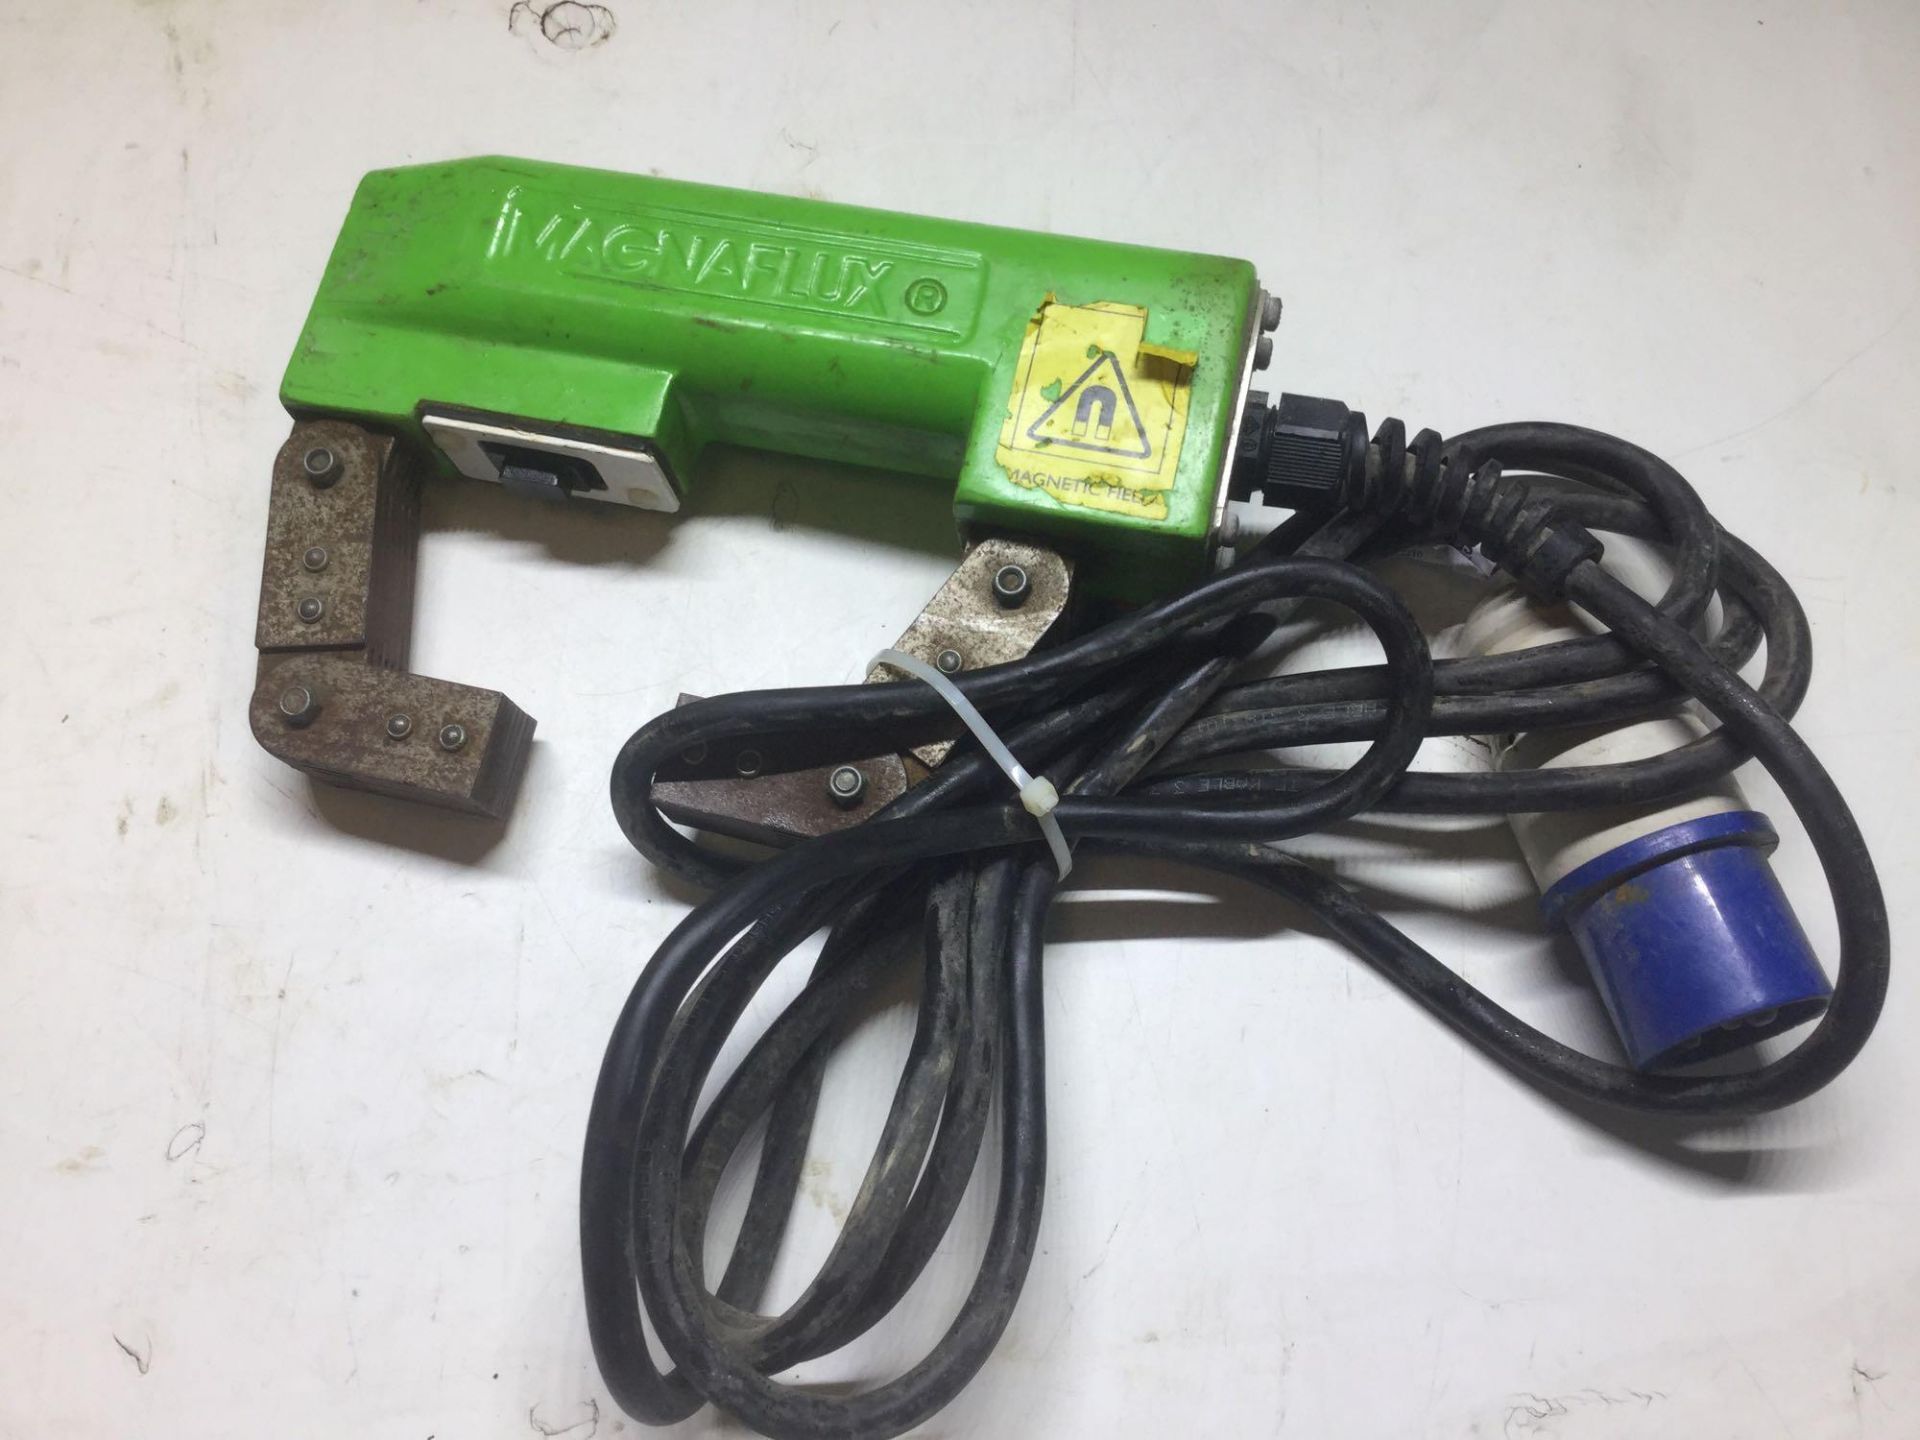 Magnaflux Electro Magnetic Yoke 240v / Weld inspection testing tool